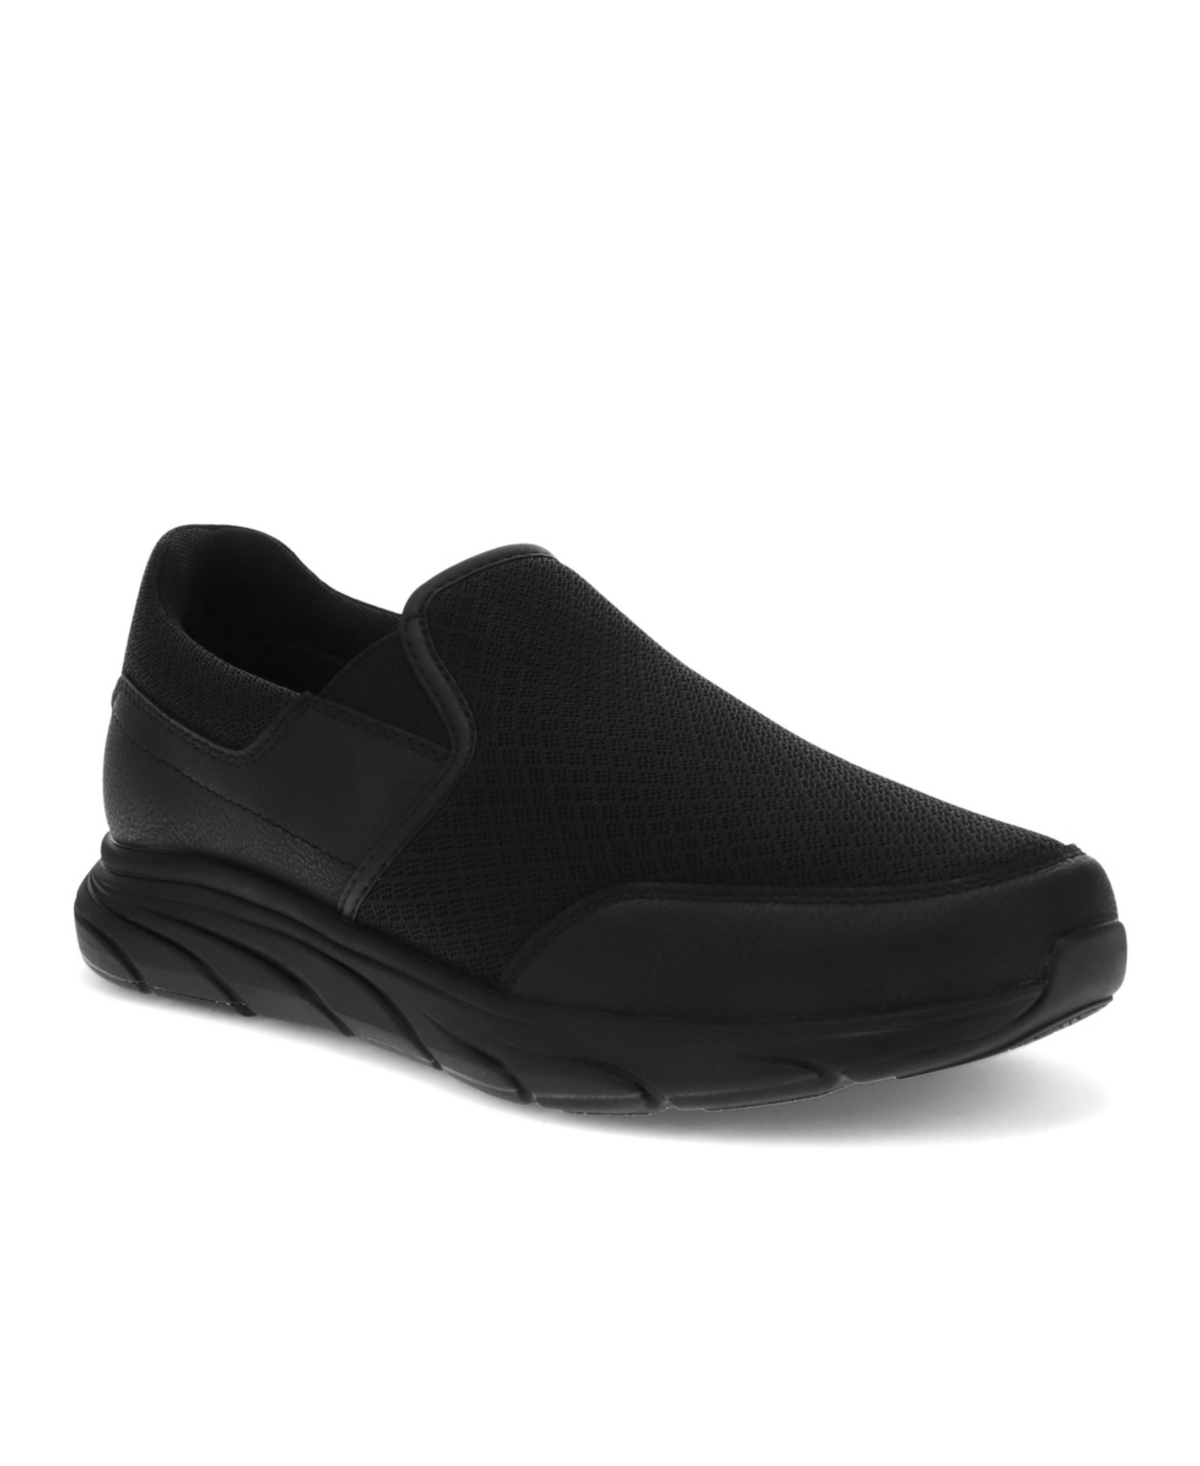 Men's Tucker Slip Resistant Slip On Sneakers - Black